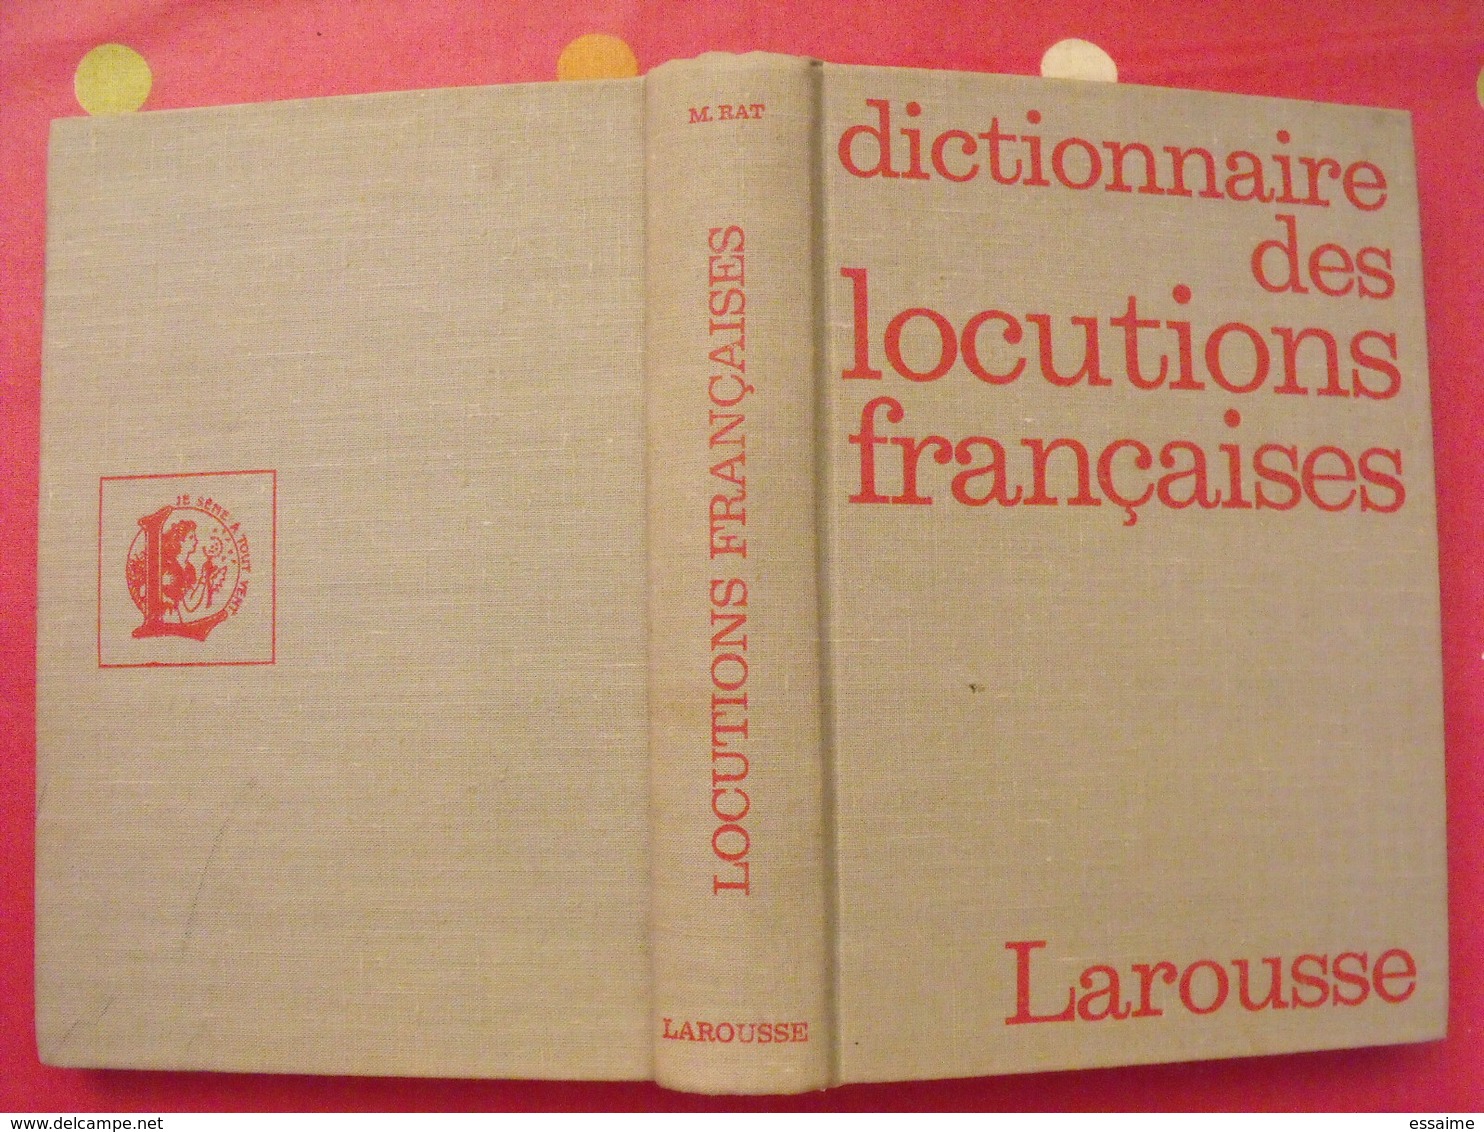 Dictionnaire Des Locutions Françaises. Maurice Rat. Larousse 1972 - Dictionnaires